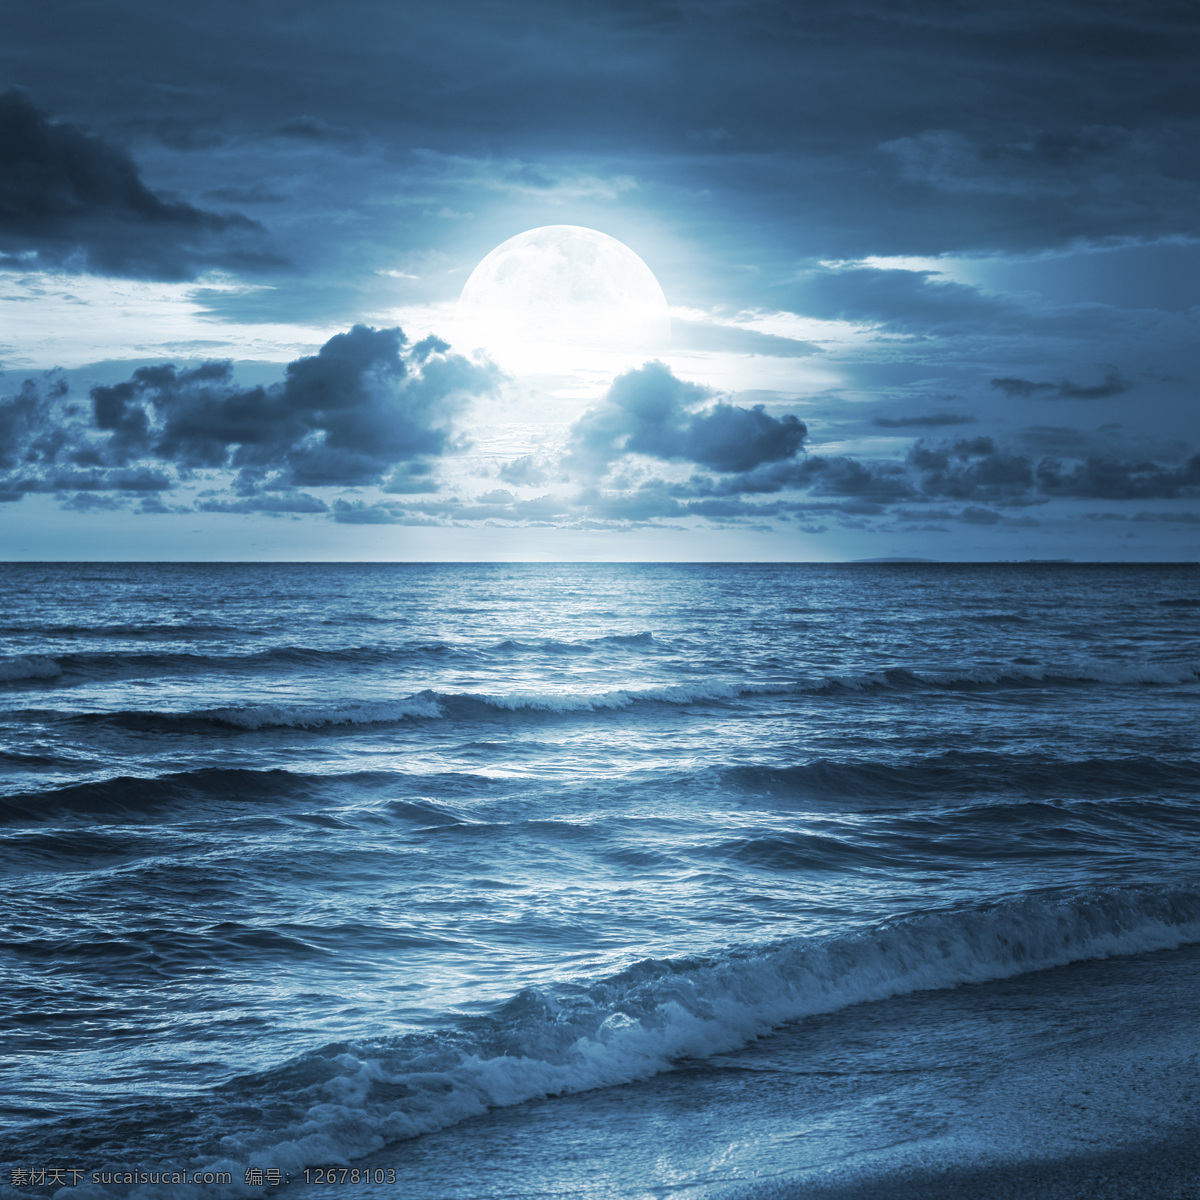 海边 月夜 景色 月夜景色 海浪 天空 云朵 沙滩 深蓝色夜景 海边夜景 桌面背景图 格式 其他风光 风景图片